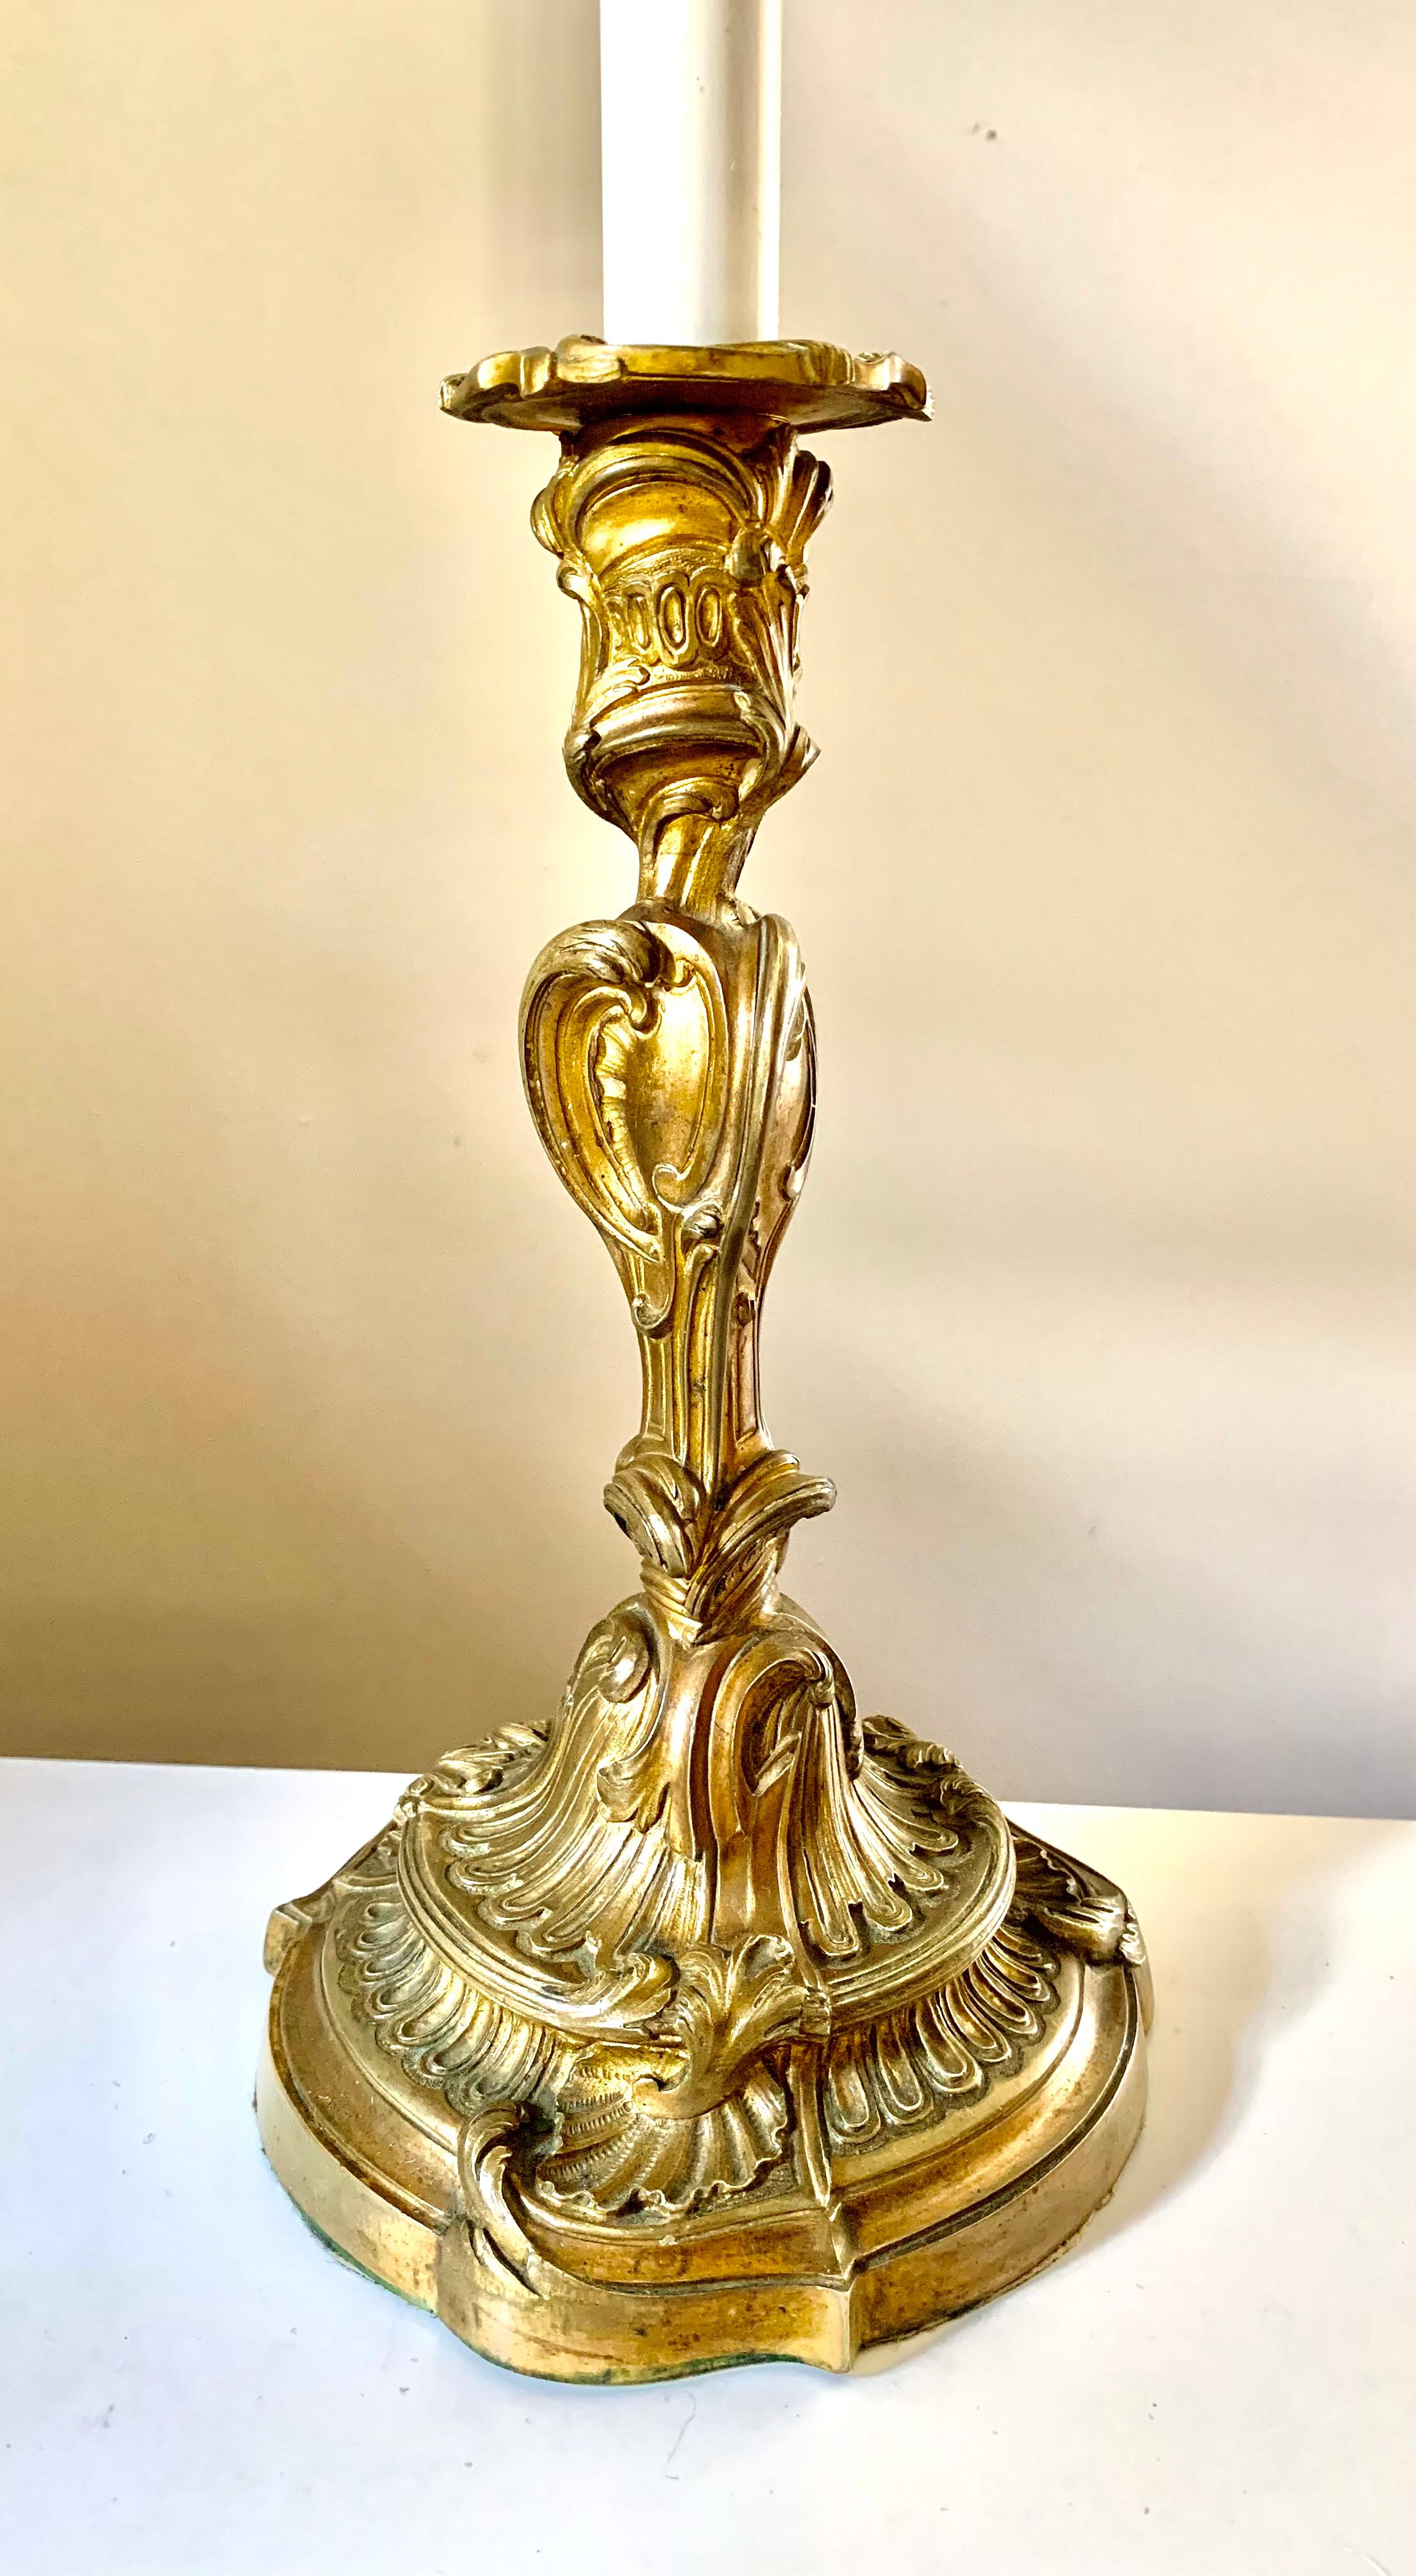 Lampe de table classique en bronze doré de style Louis XV
19ème siècle
France
La pièce parfaite pour ajouter une touche de luxe et de glamour à un paysage de table, très belle qualité, détails finis à la main, merveilleuse patine antique, câblée